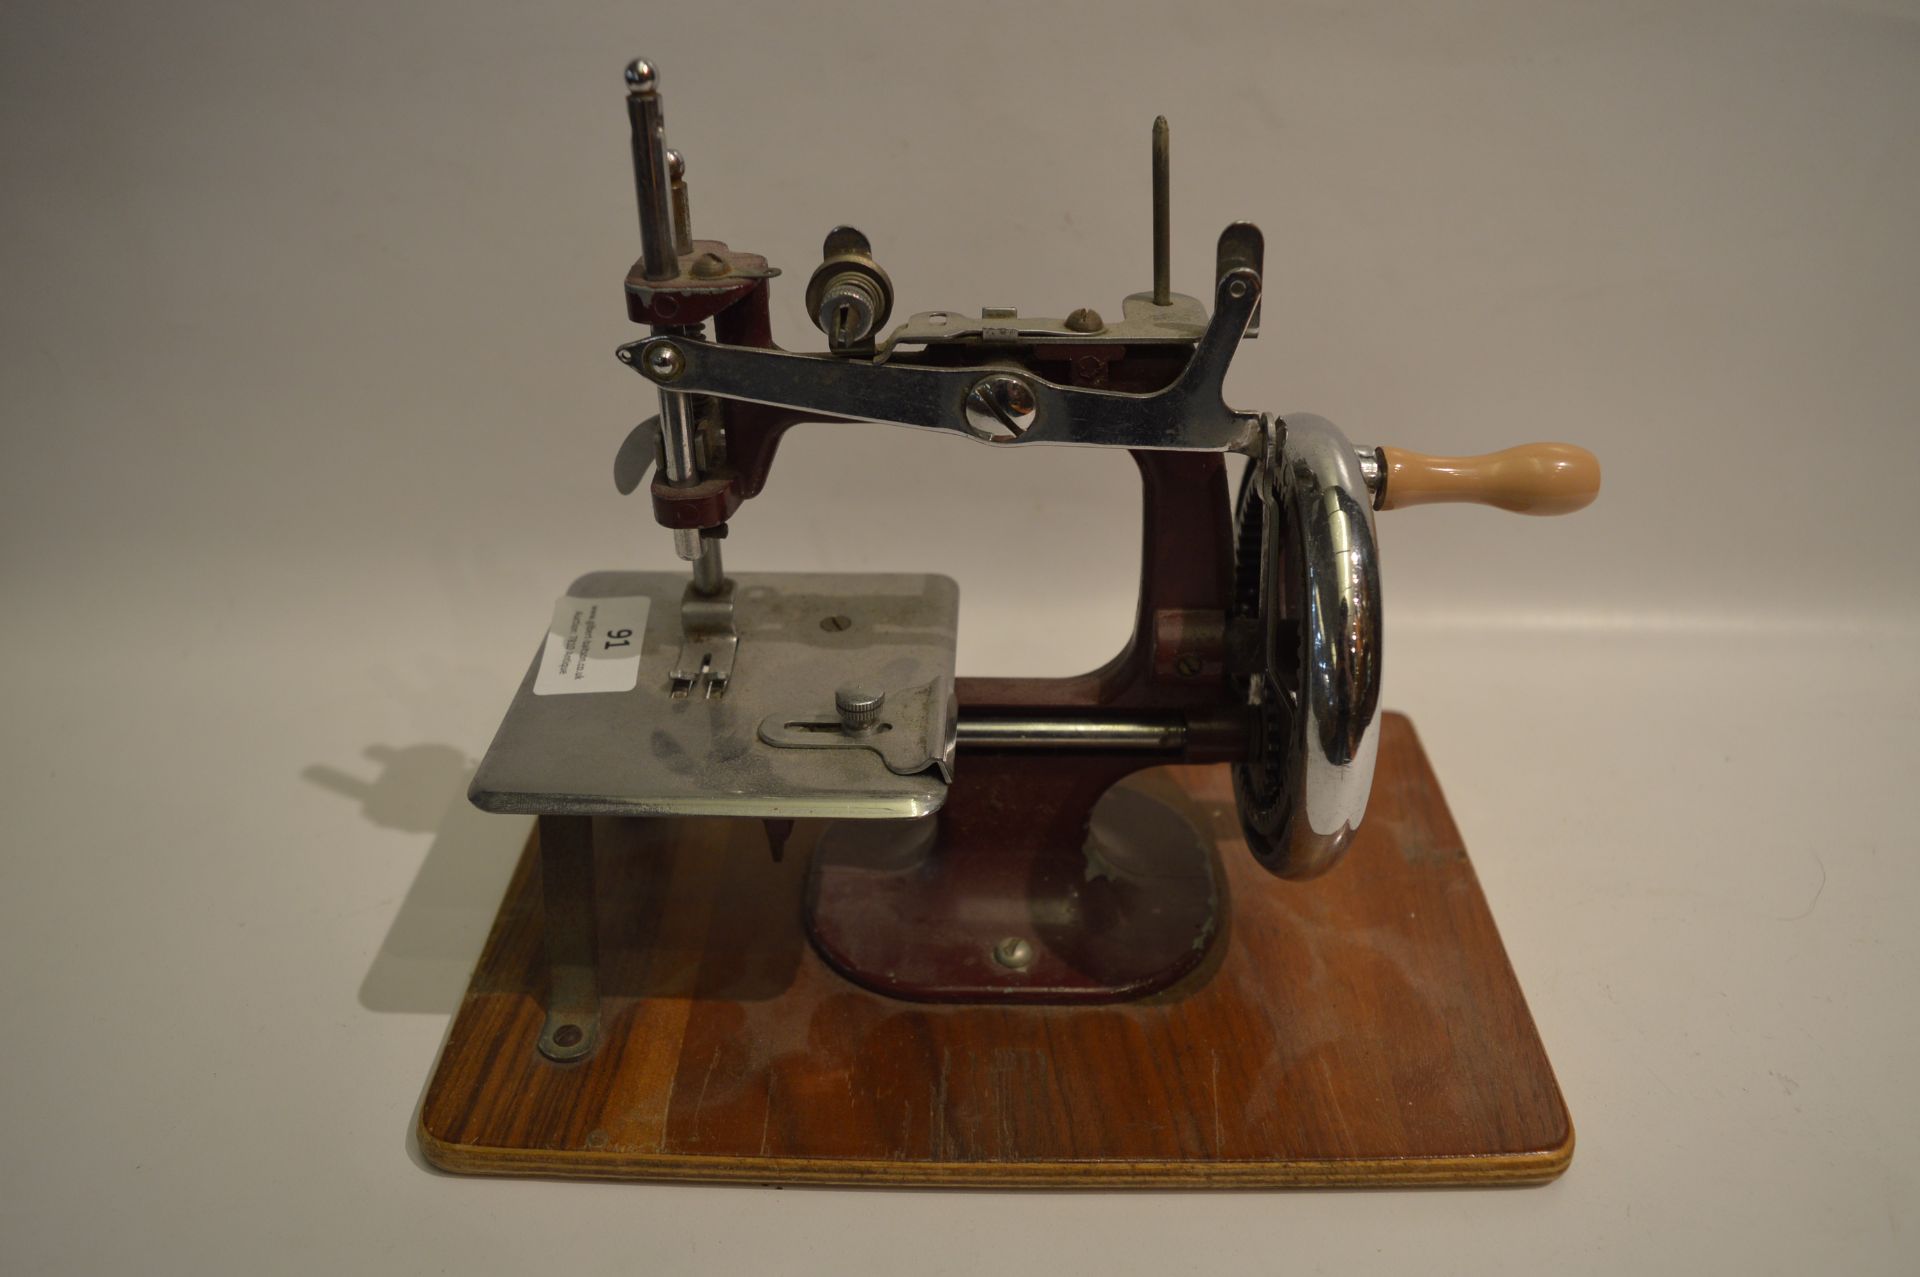 Toy Metal Sewing Machine